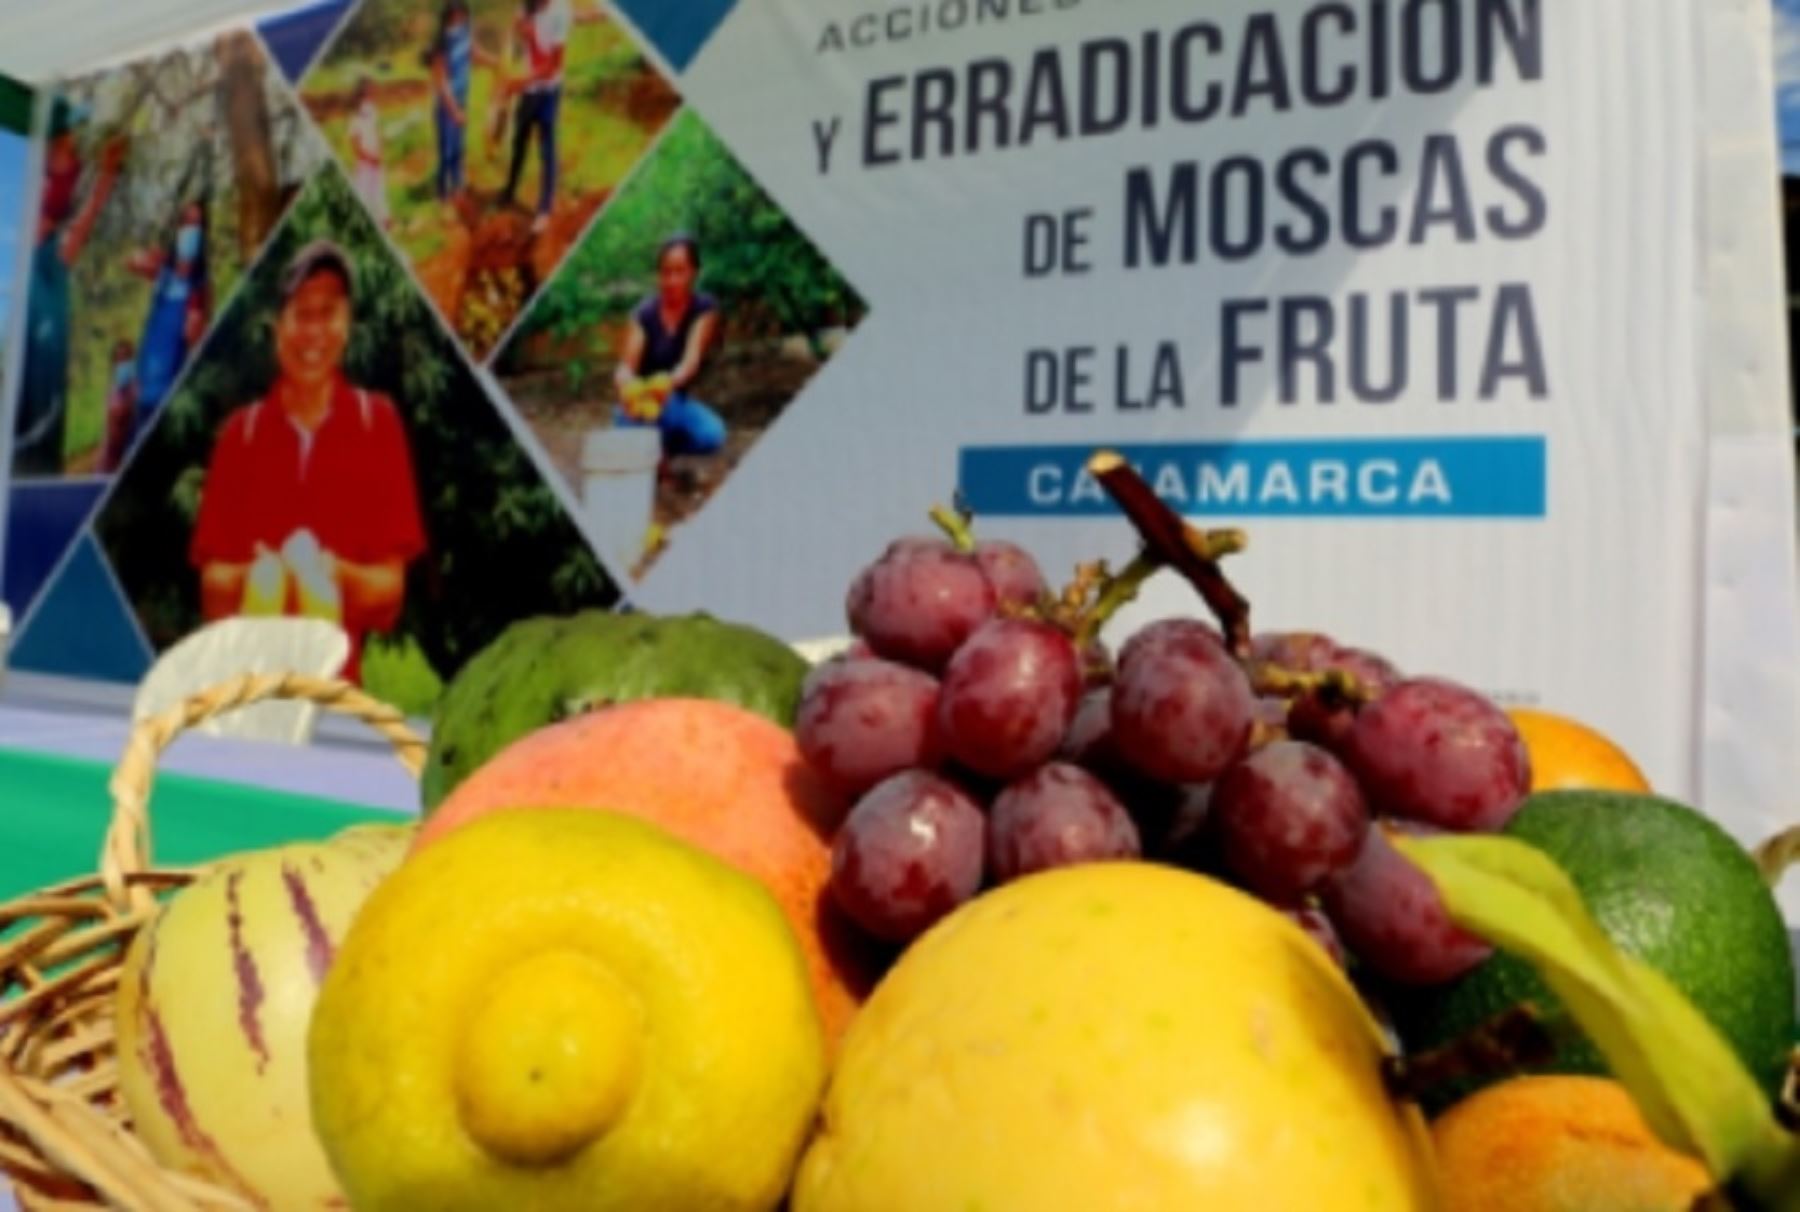 El objetivo para el 2023 es que Cajamarca sea declarada área libre de la mosca de la fruta, estado fitosanitario que le permitirá llevar sus productos agrícolas a nuevos mercados internacionales, sin mayores restricciones.